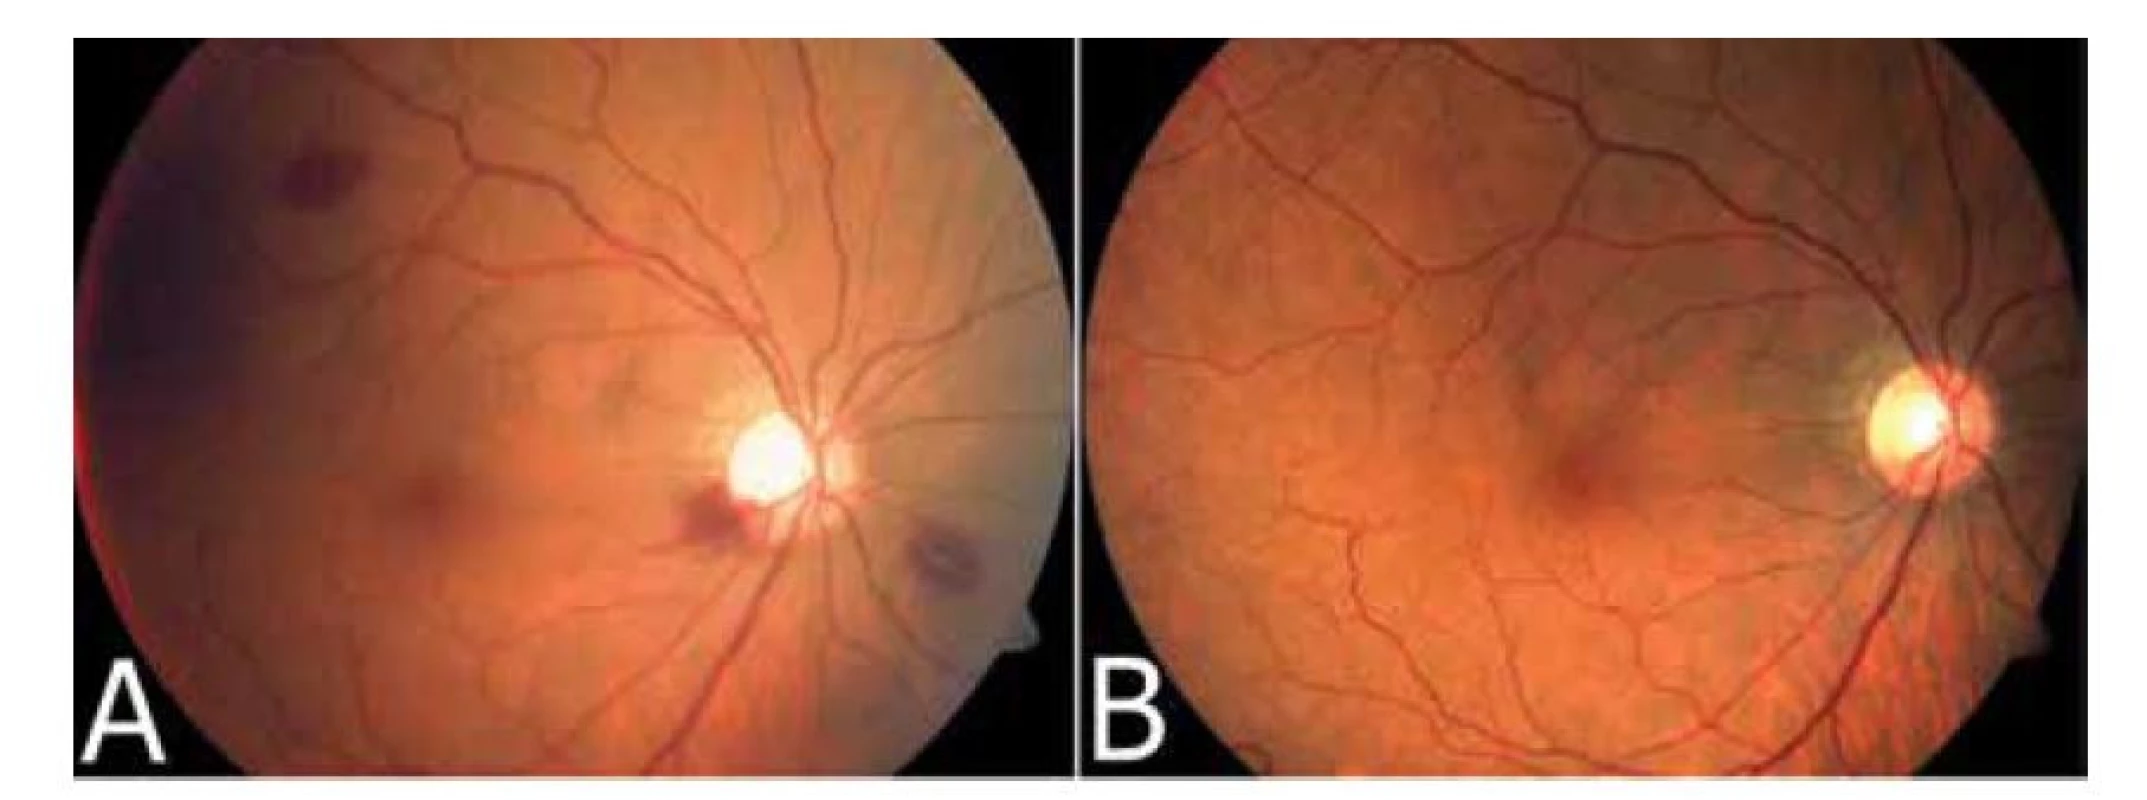 Fotodokumentace sítnice pravého oka bezprostředně po explantaci arteficiální duhovky
ukazující intraretinální hemoragie peripapilárně a v periferii sítnice (A) a následné vstřebání
hemoragií (B)